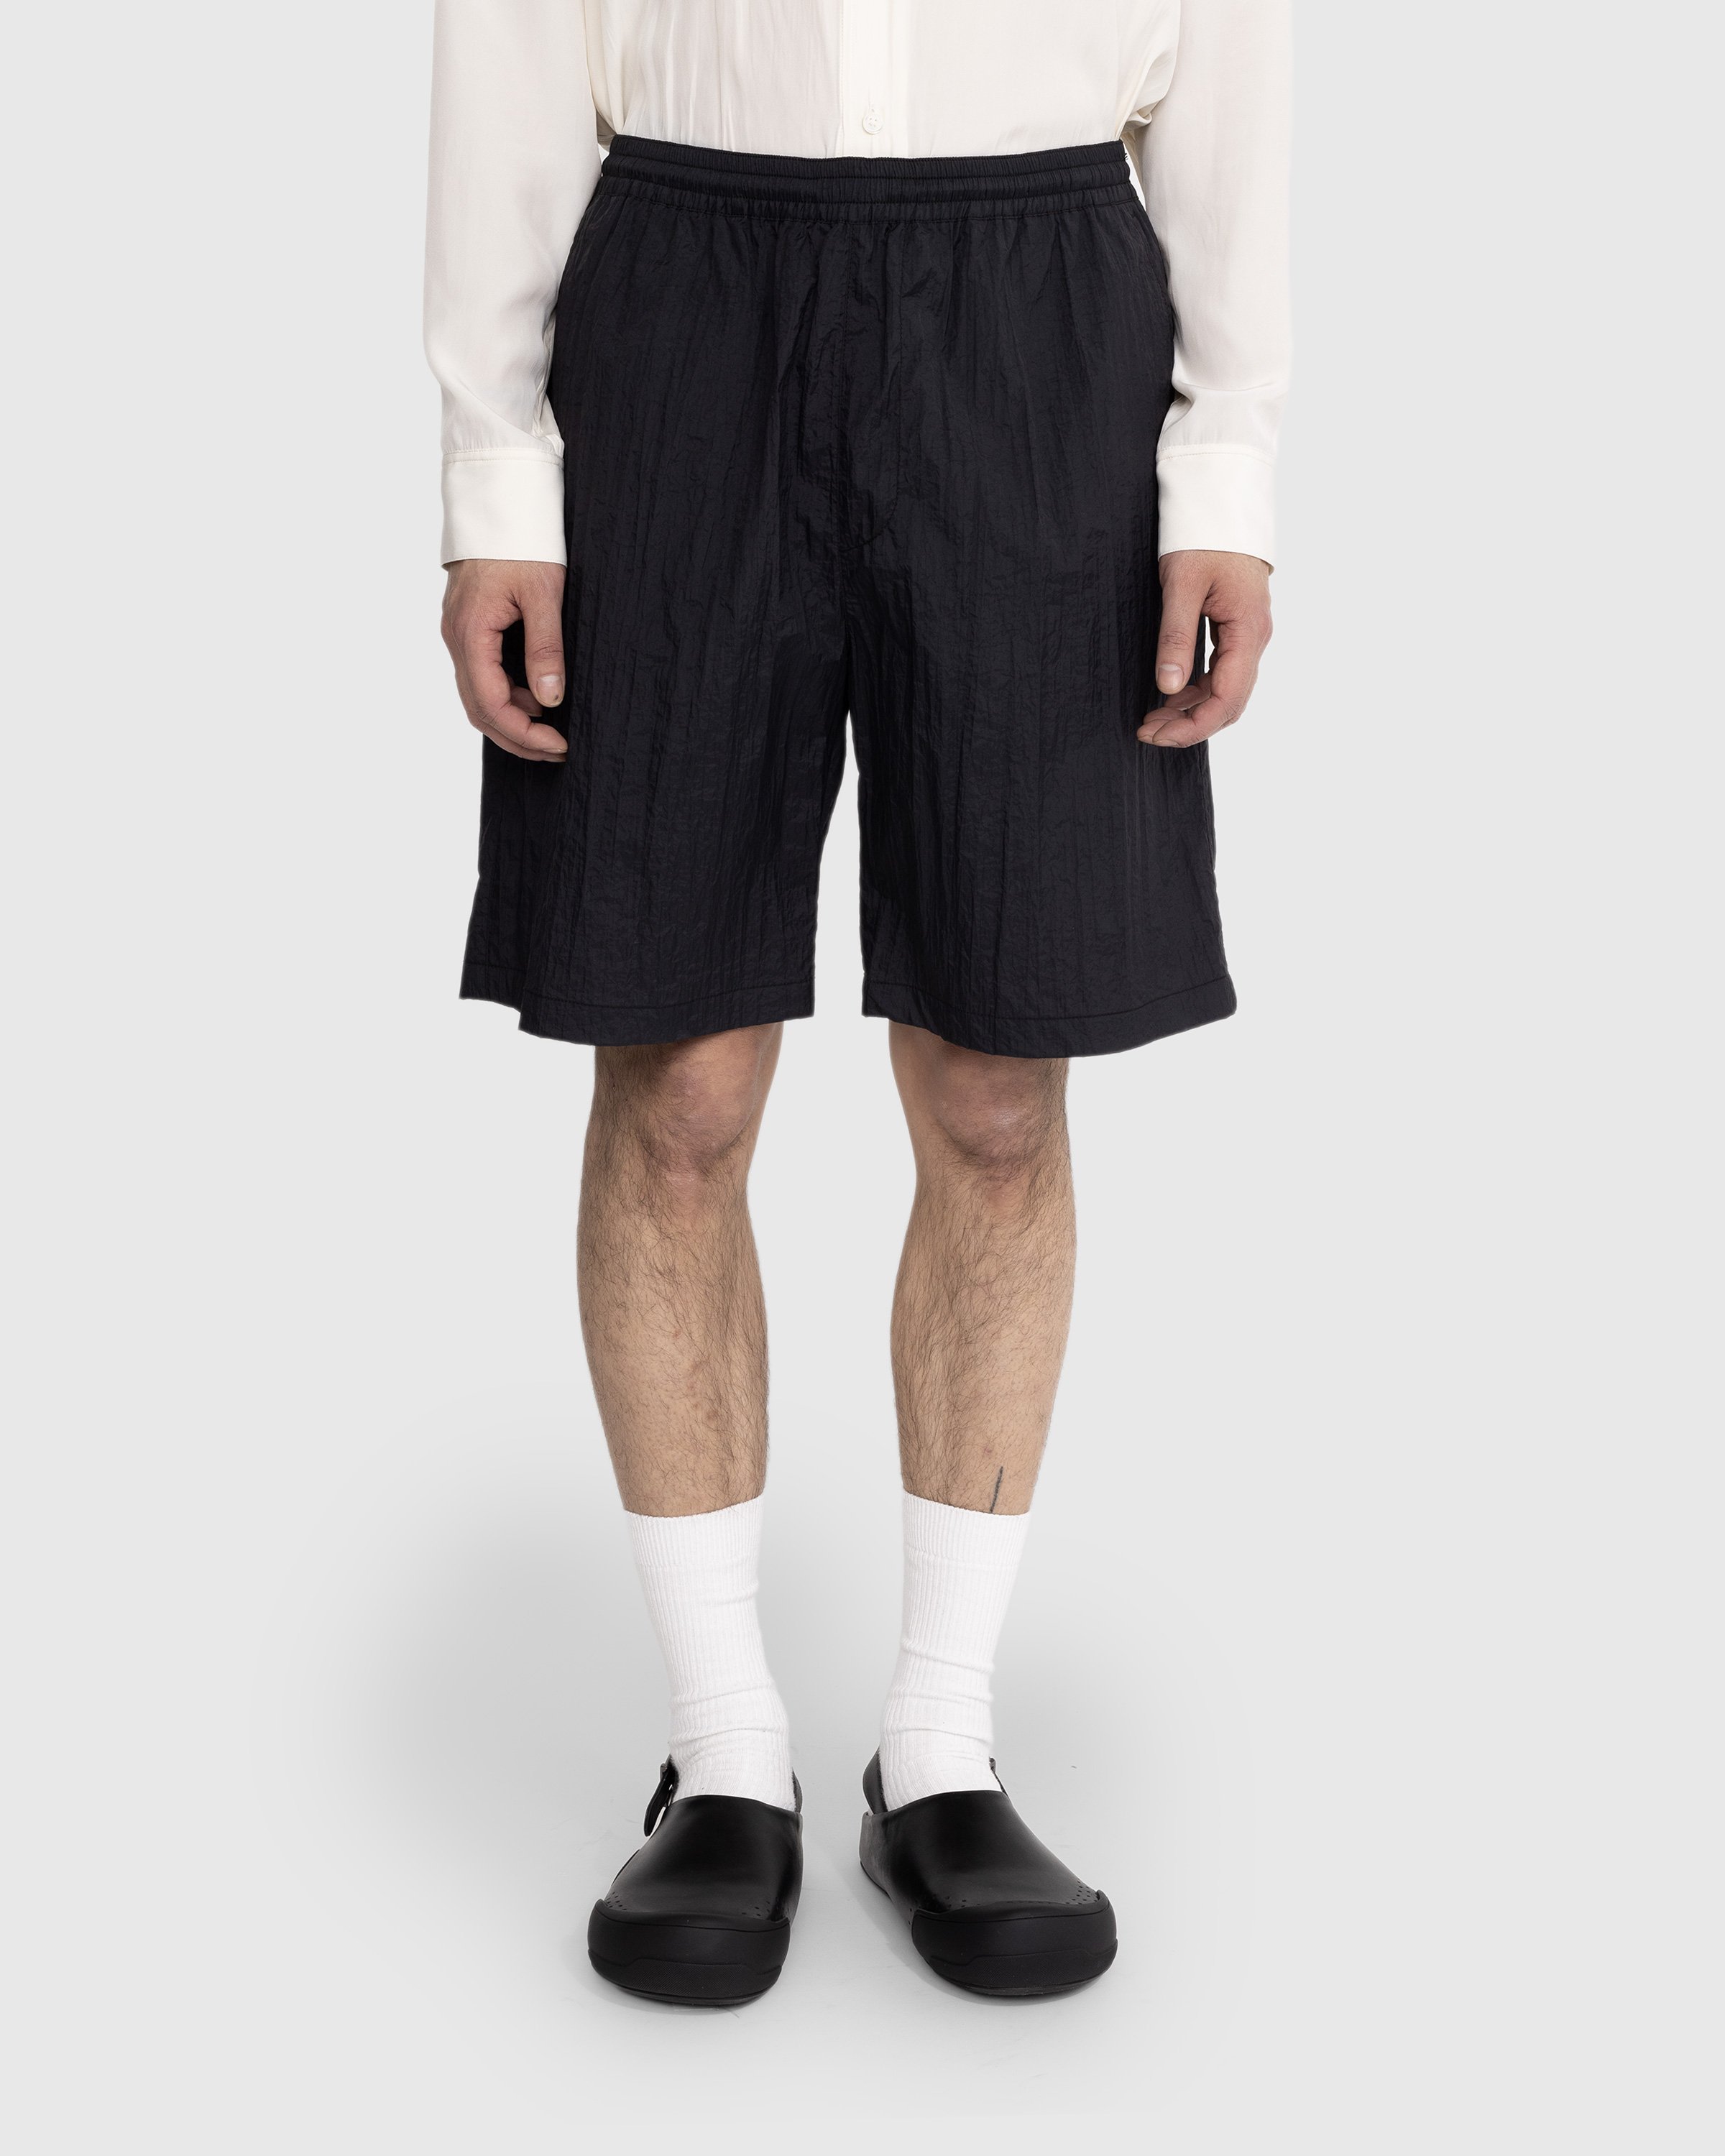 Highsnobiety - Texture Nylon Mid Length Elastic Shorts Black - Clothing - Black - Image 2